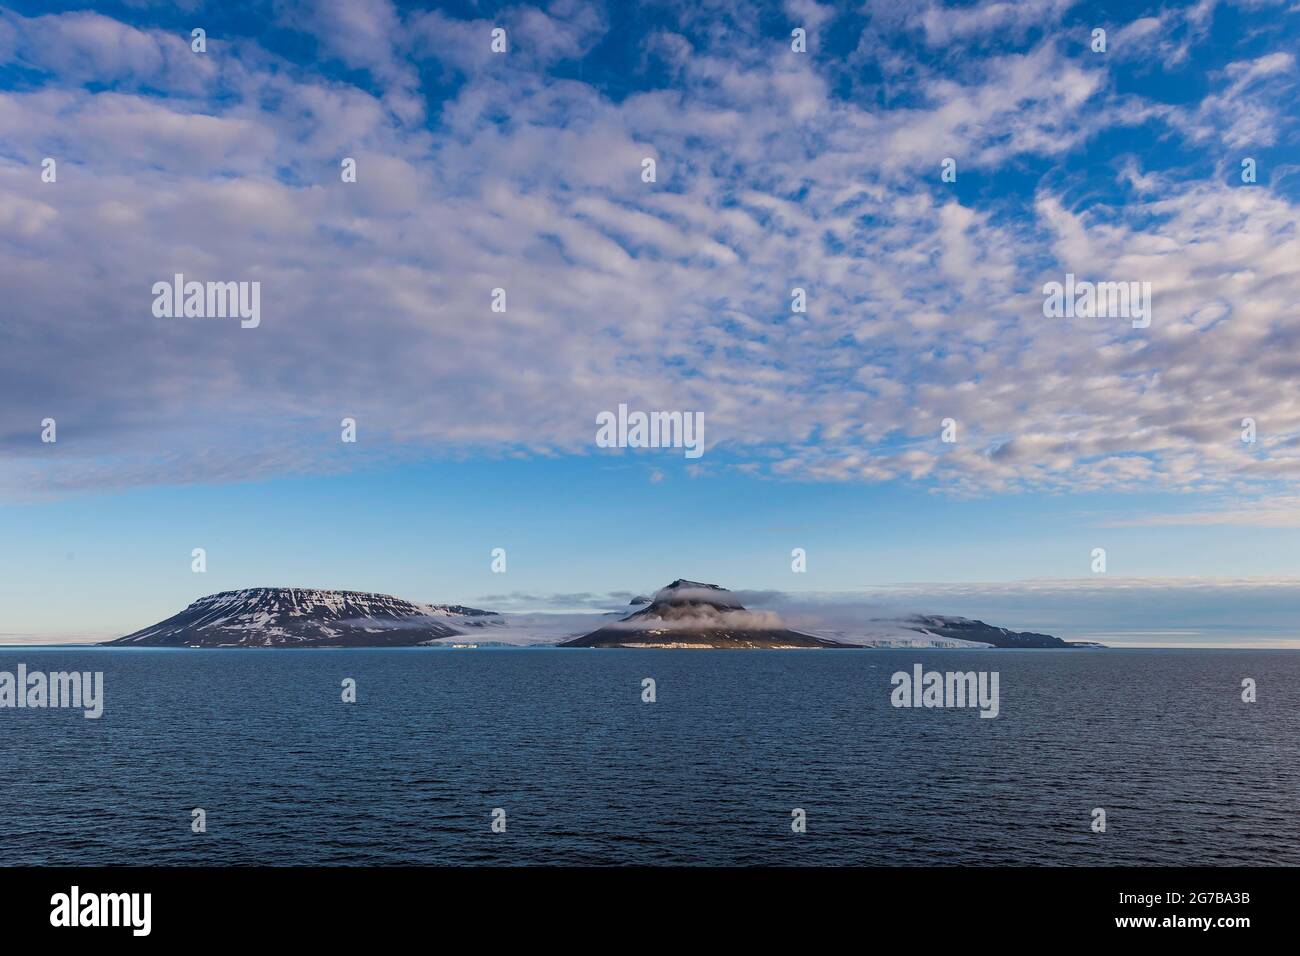 Montagnes plates couvertes de glace, archipel Franz Josef Land, Russie Banque D'Images